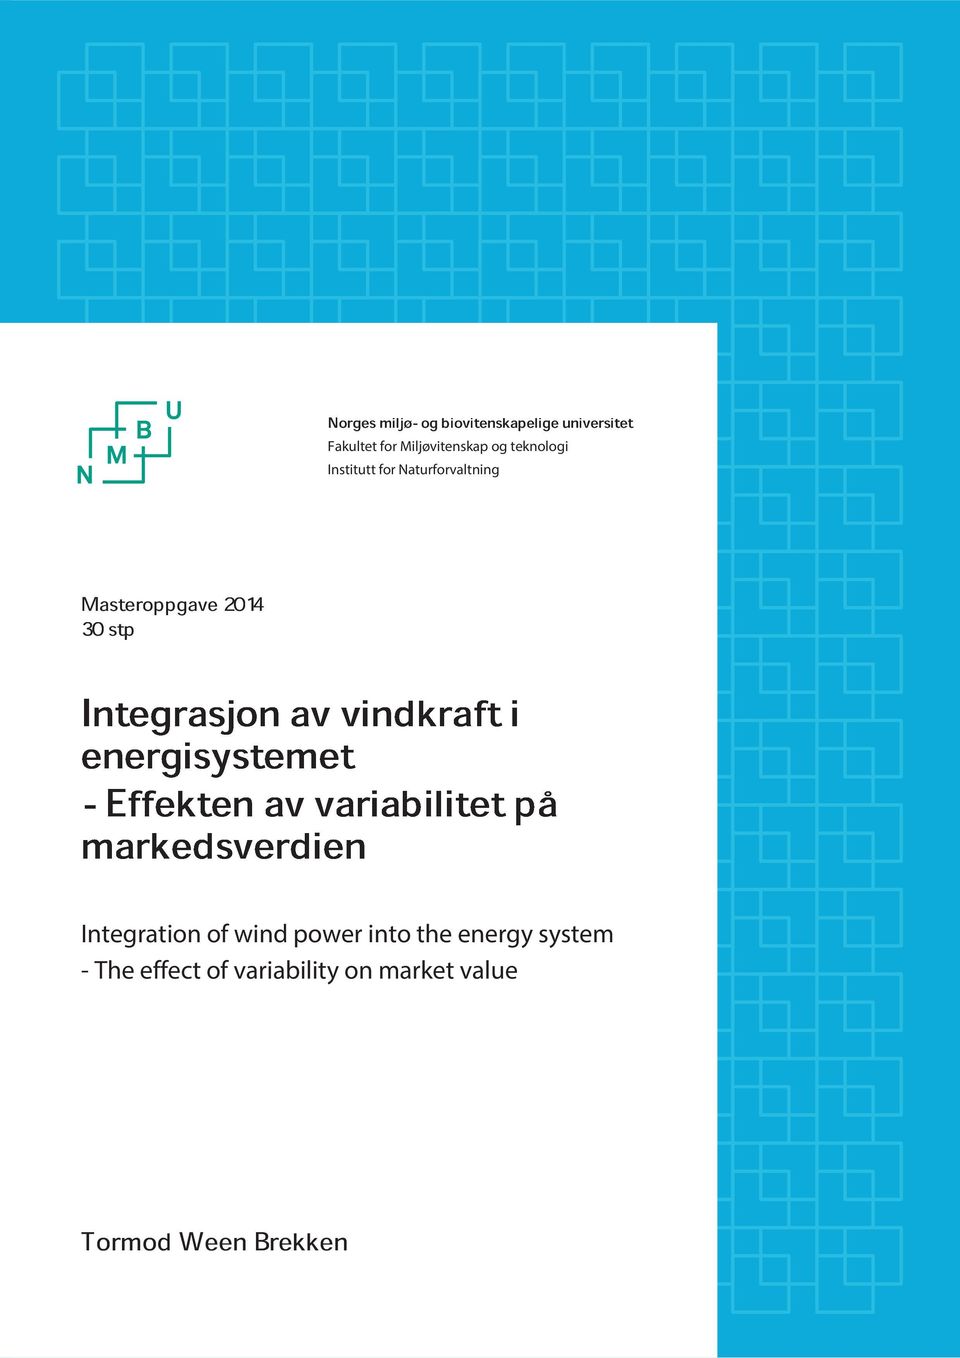 Integrasjonavvindkrafti energisystemet -Effektenavvariabilitetpå markedsverdien